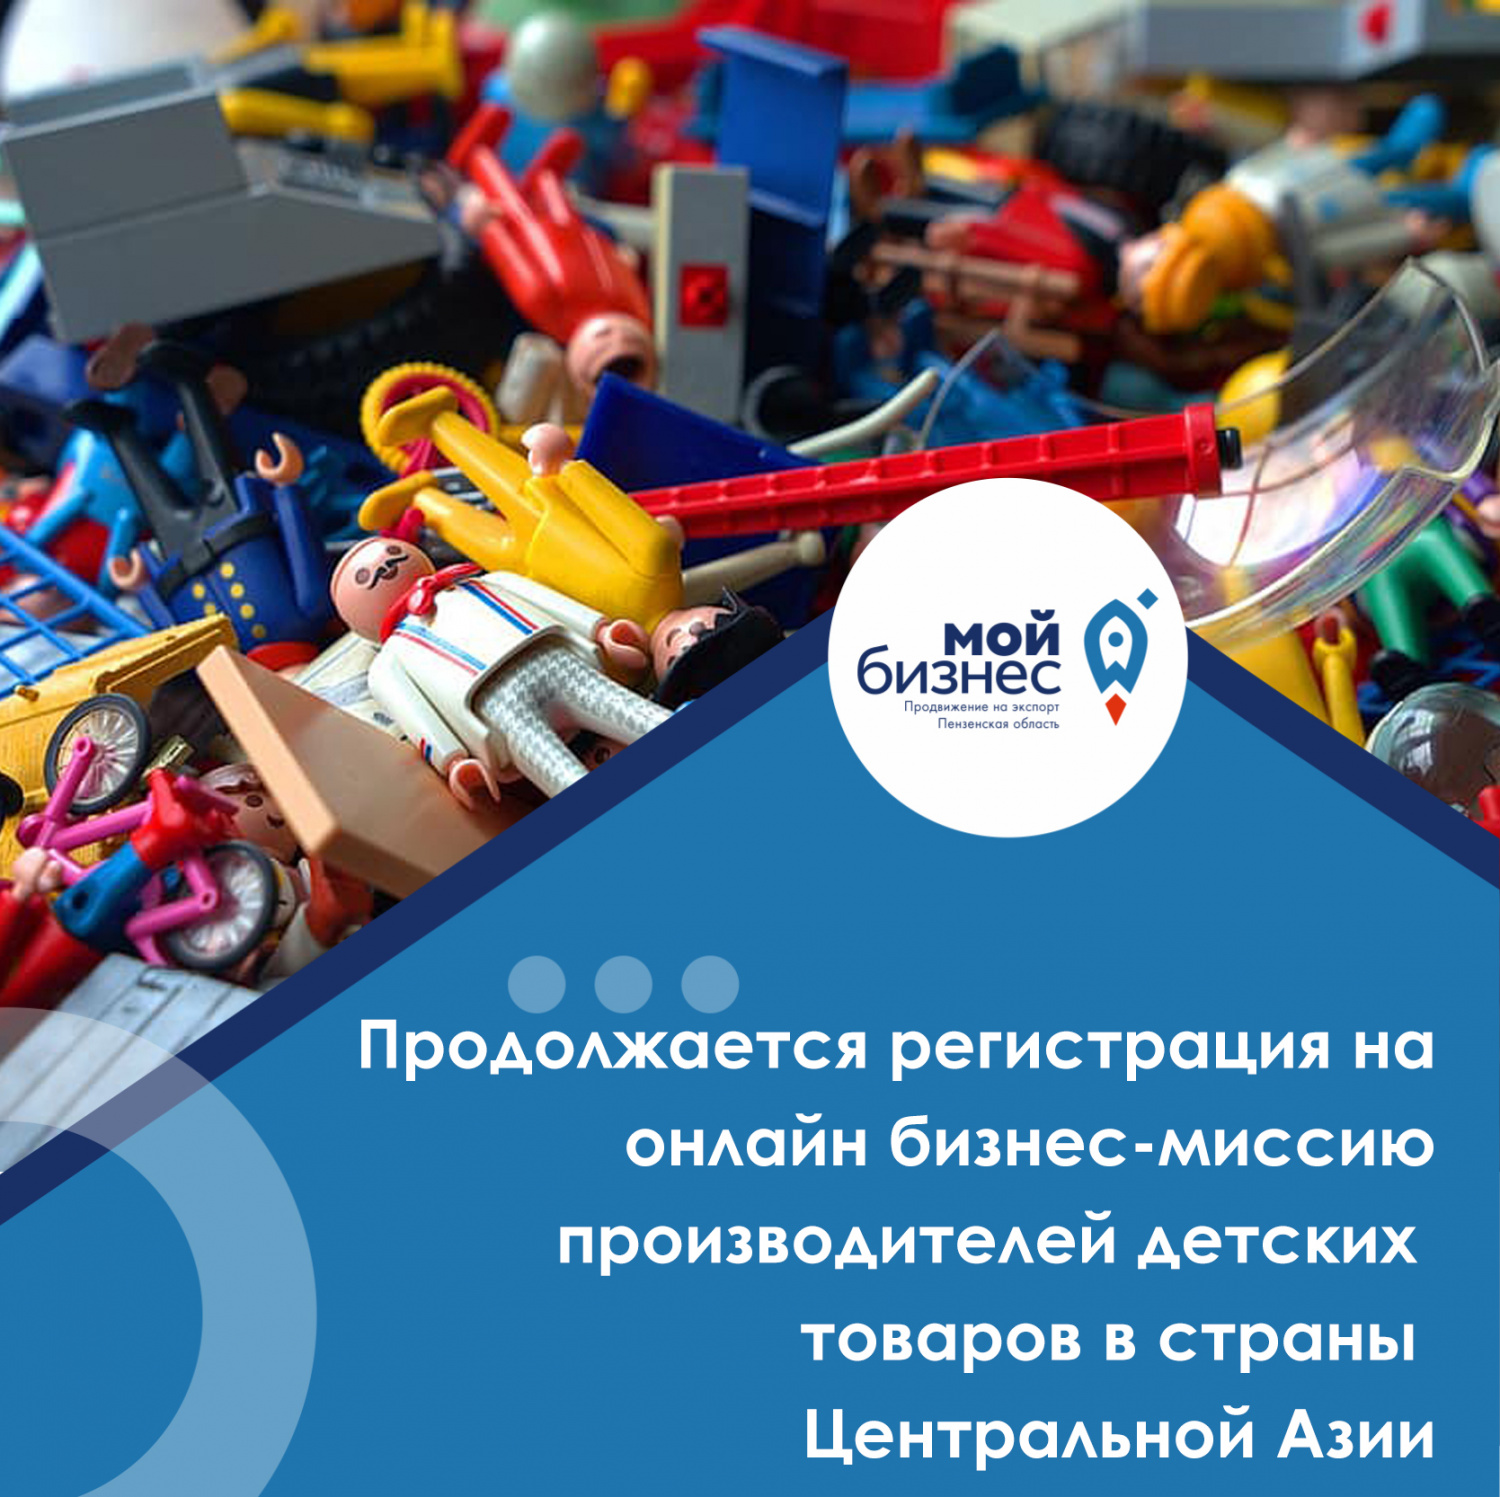 Продолжается регистрация на онлайн бизнес-миссию производителей детских товаров в страны Центральной Азии